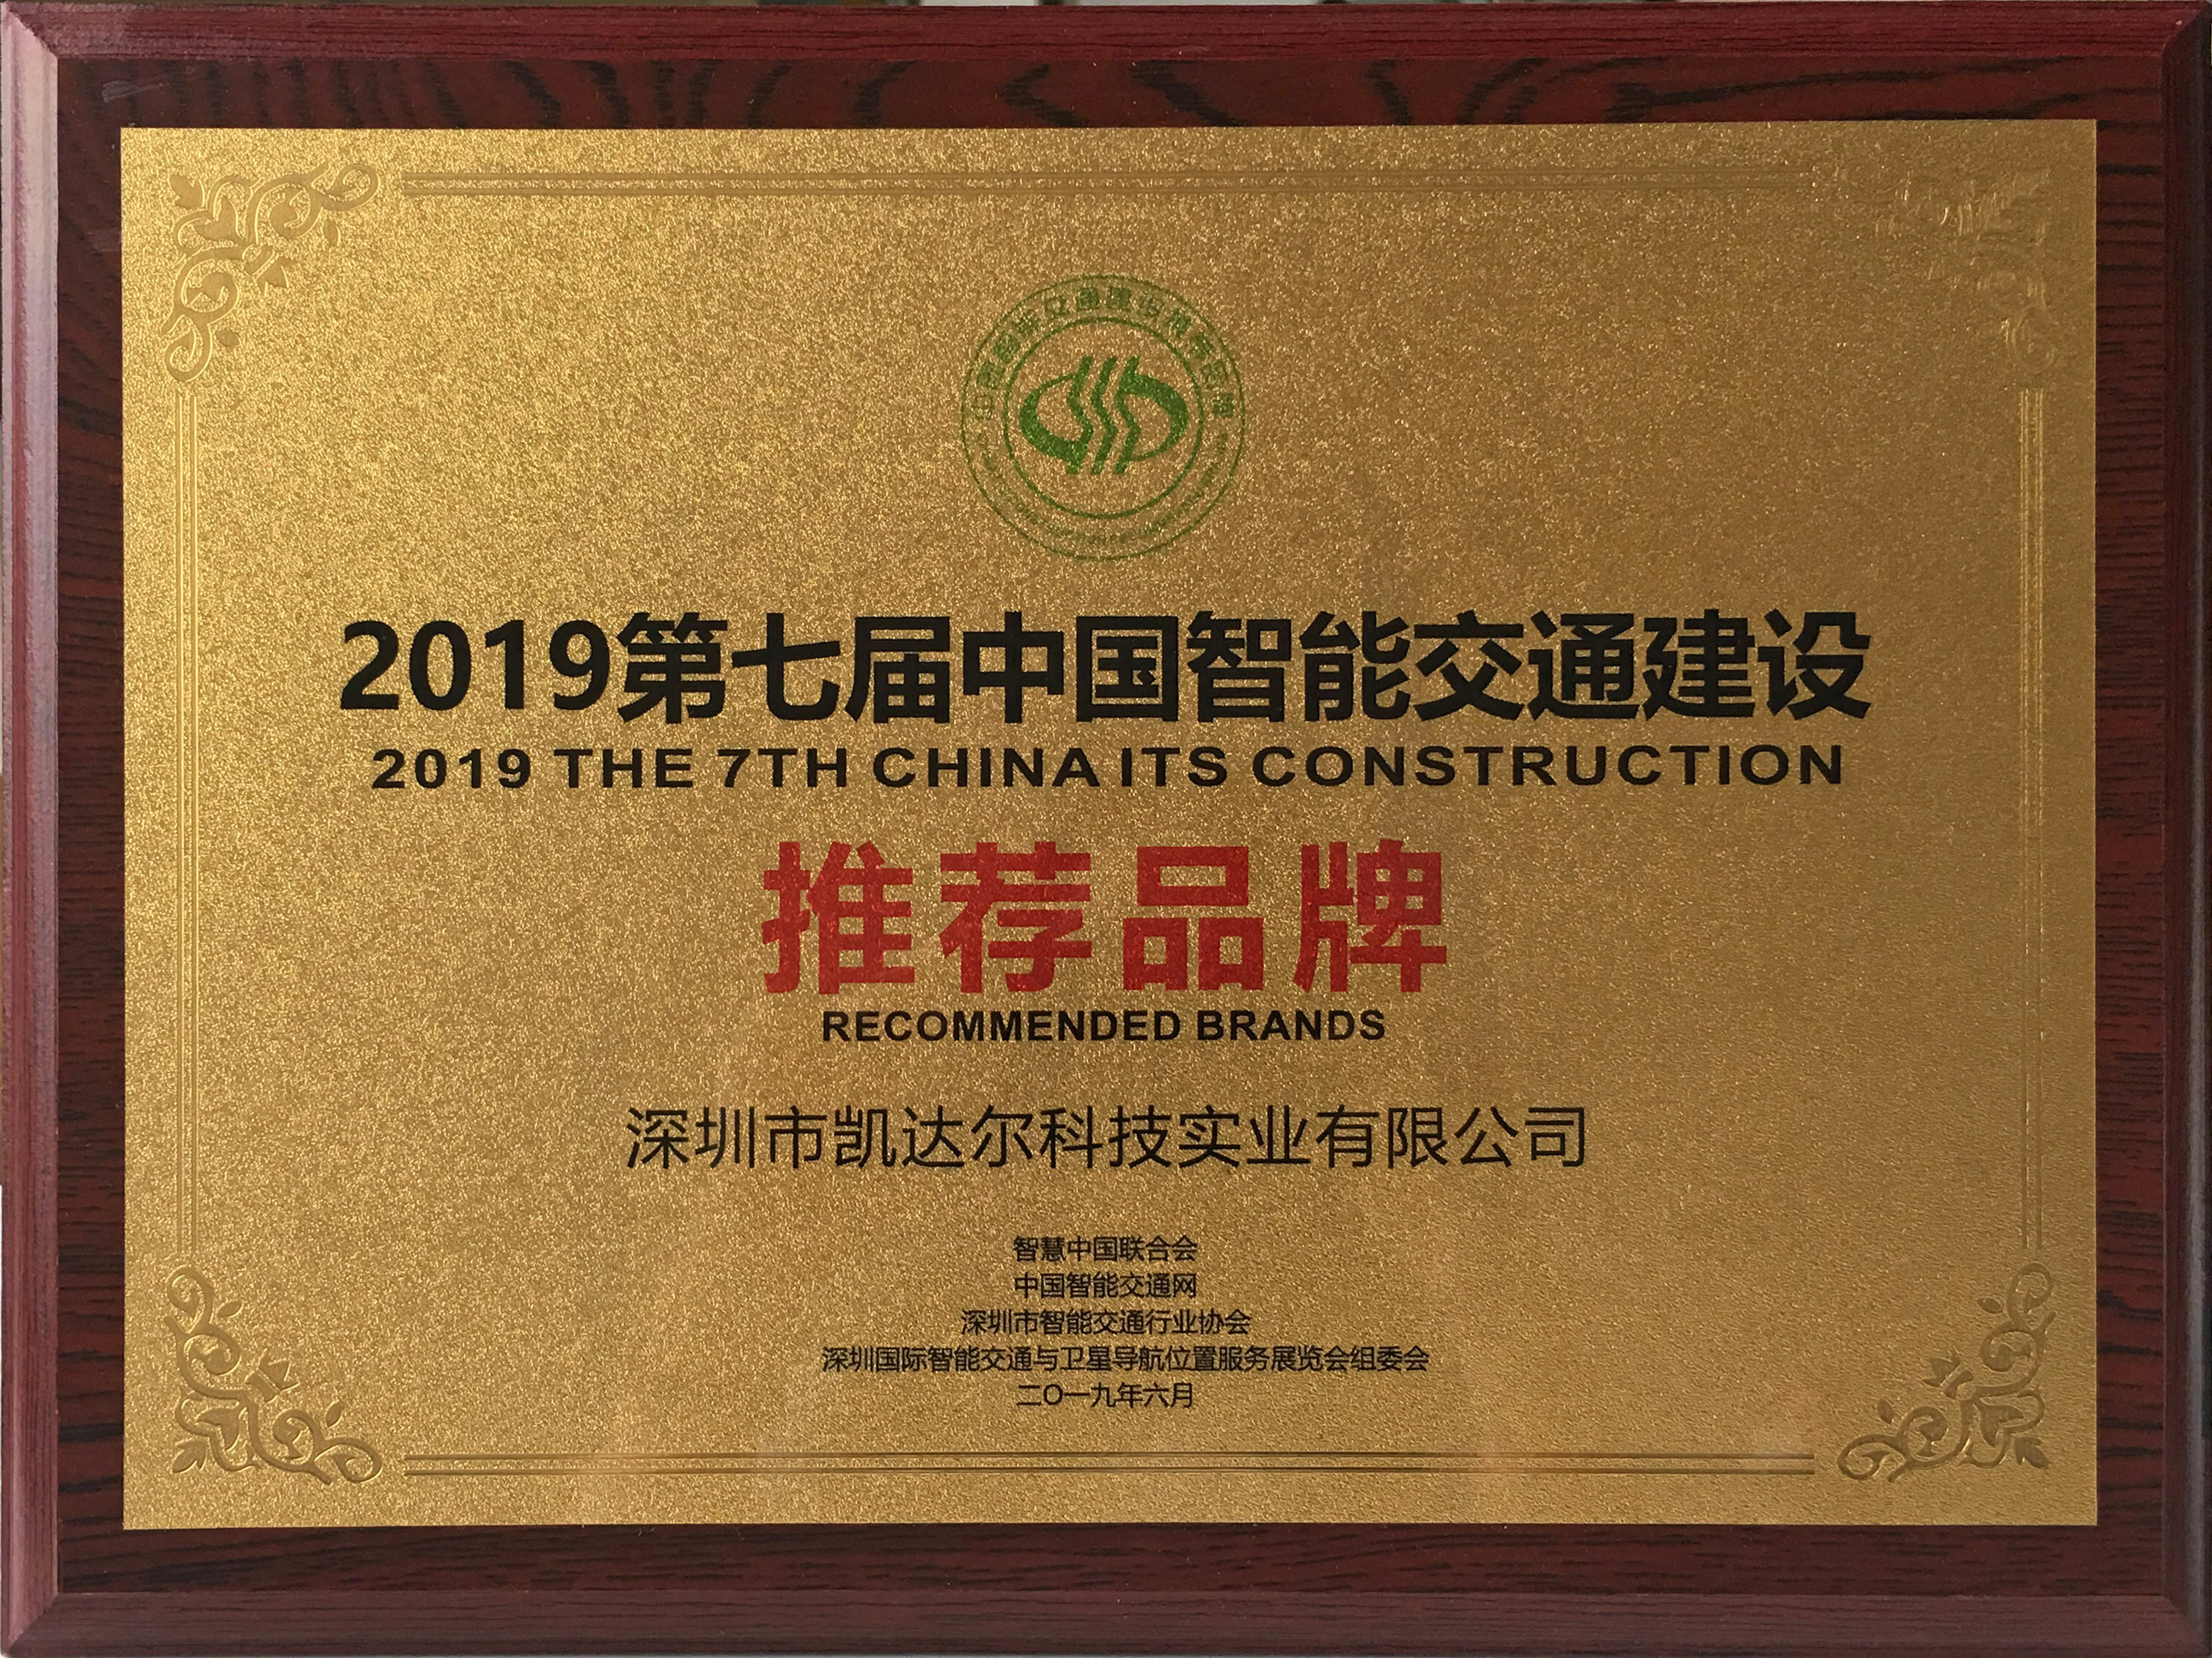 2019第七届中国智能交通建设推荐品牌